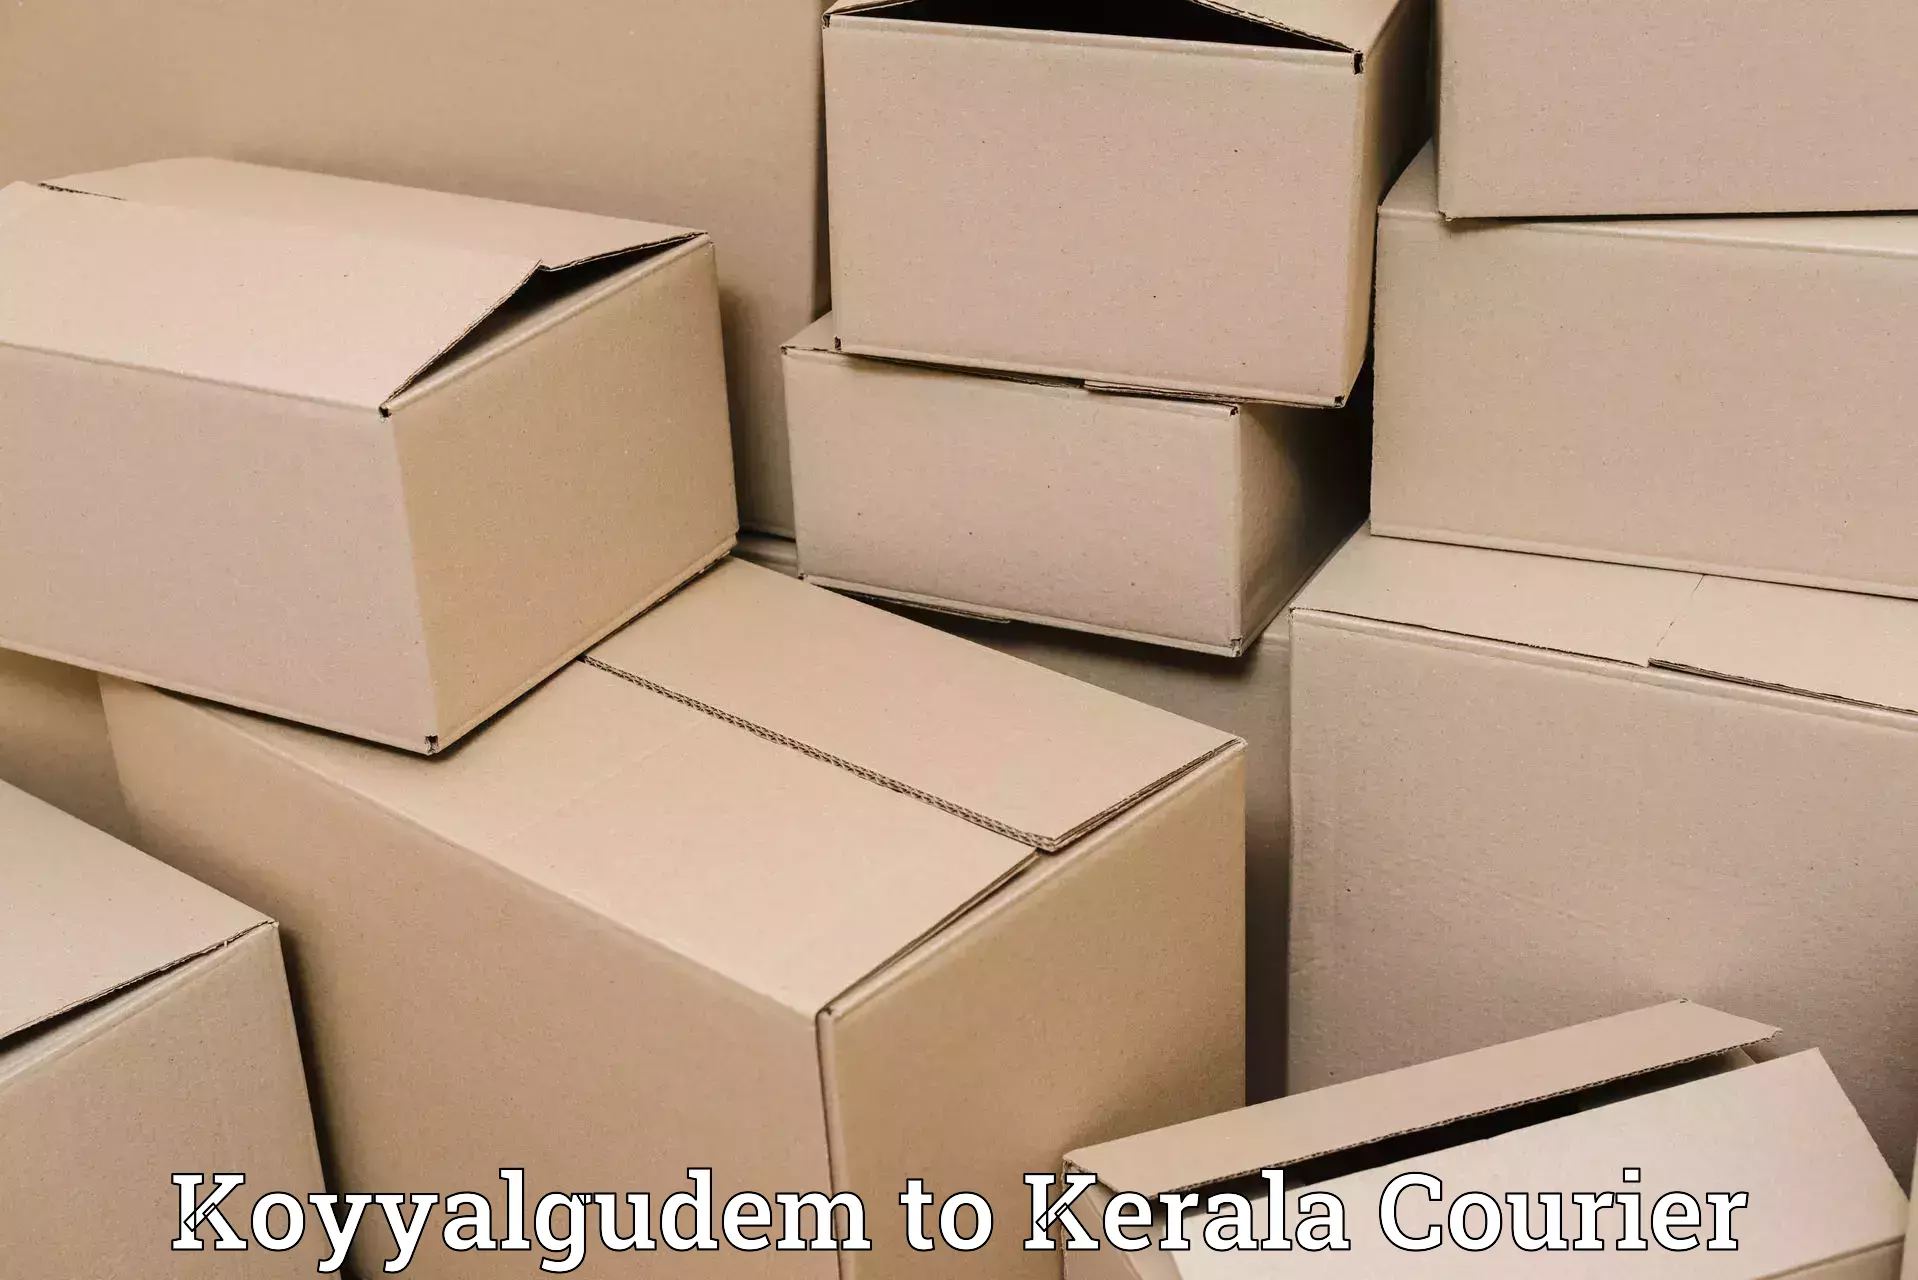 Efficient shipping platforms in Koyyalgudem to Karukachal